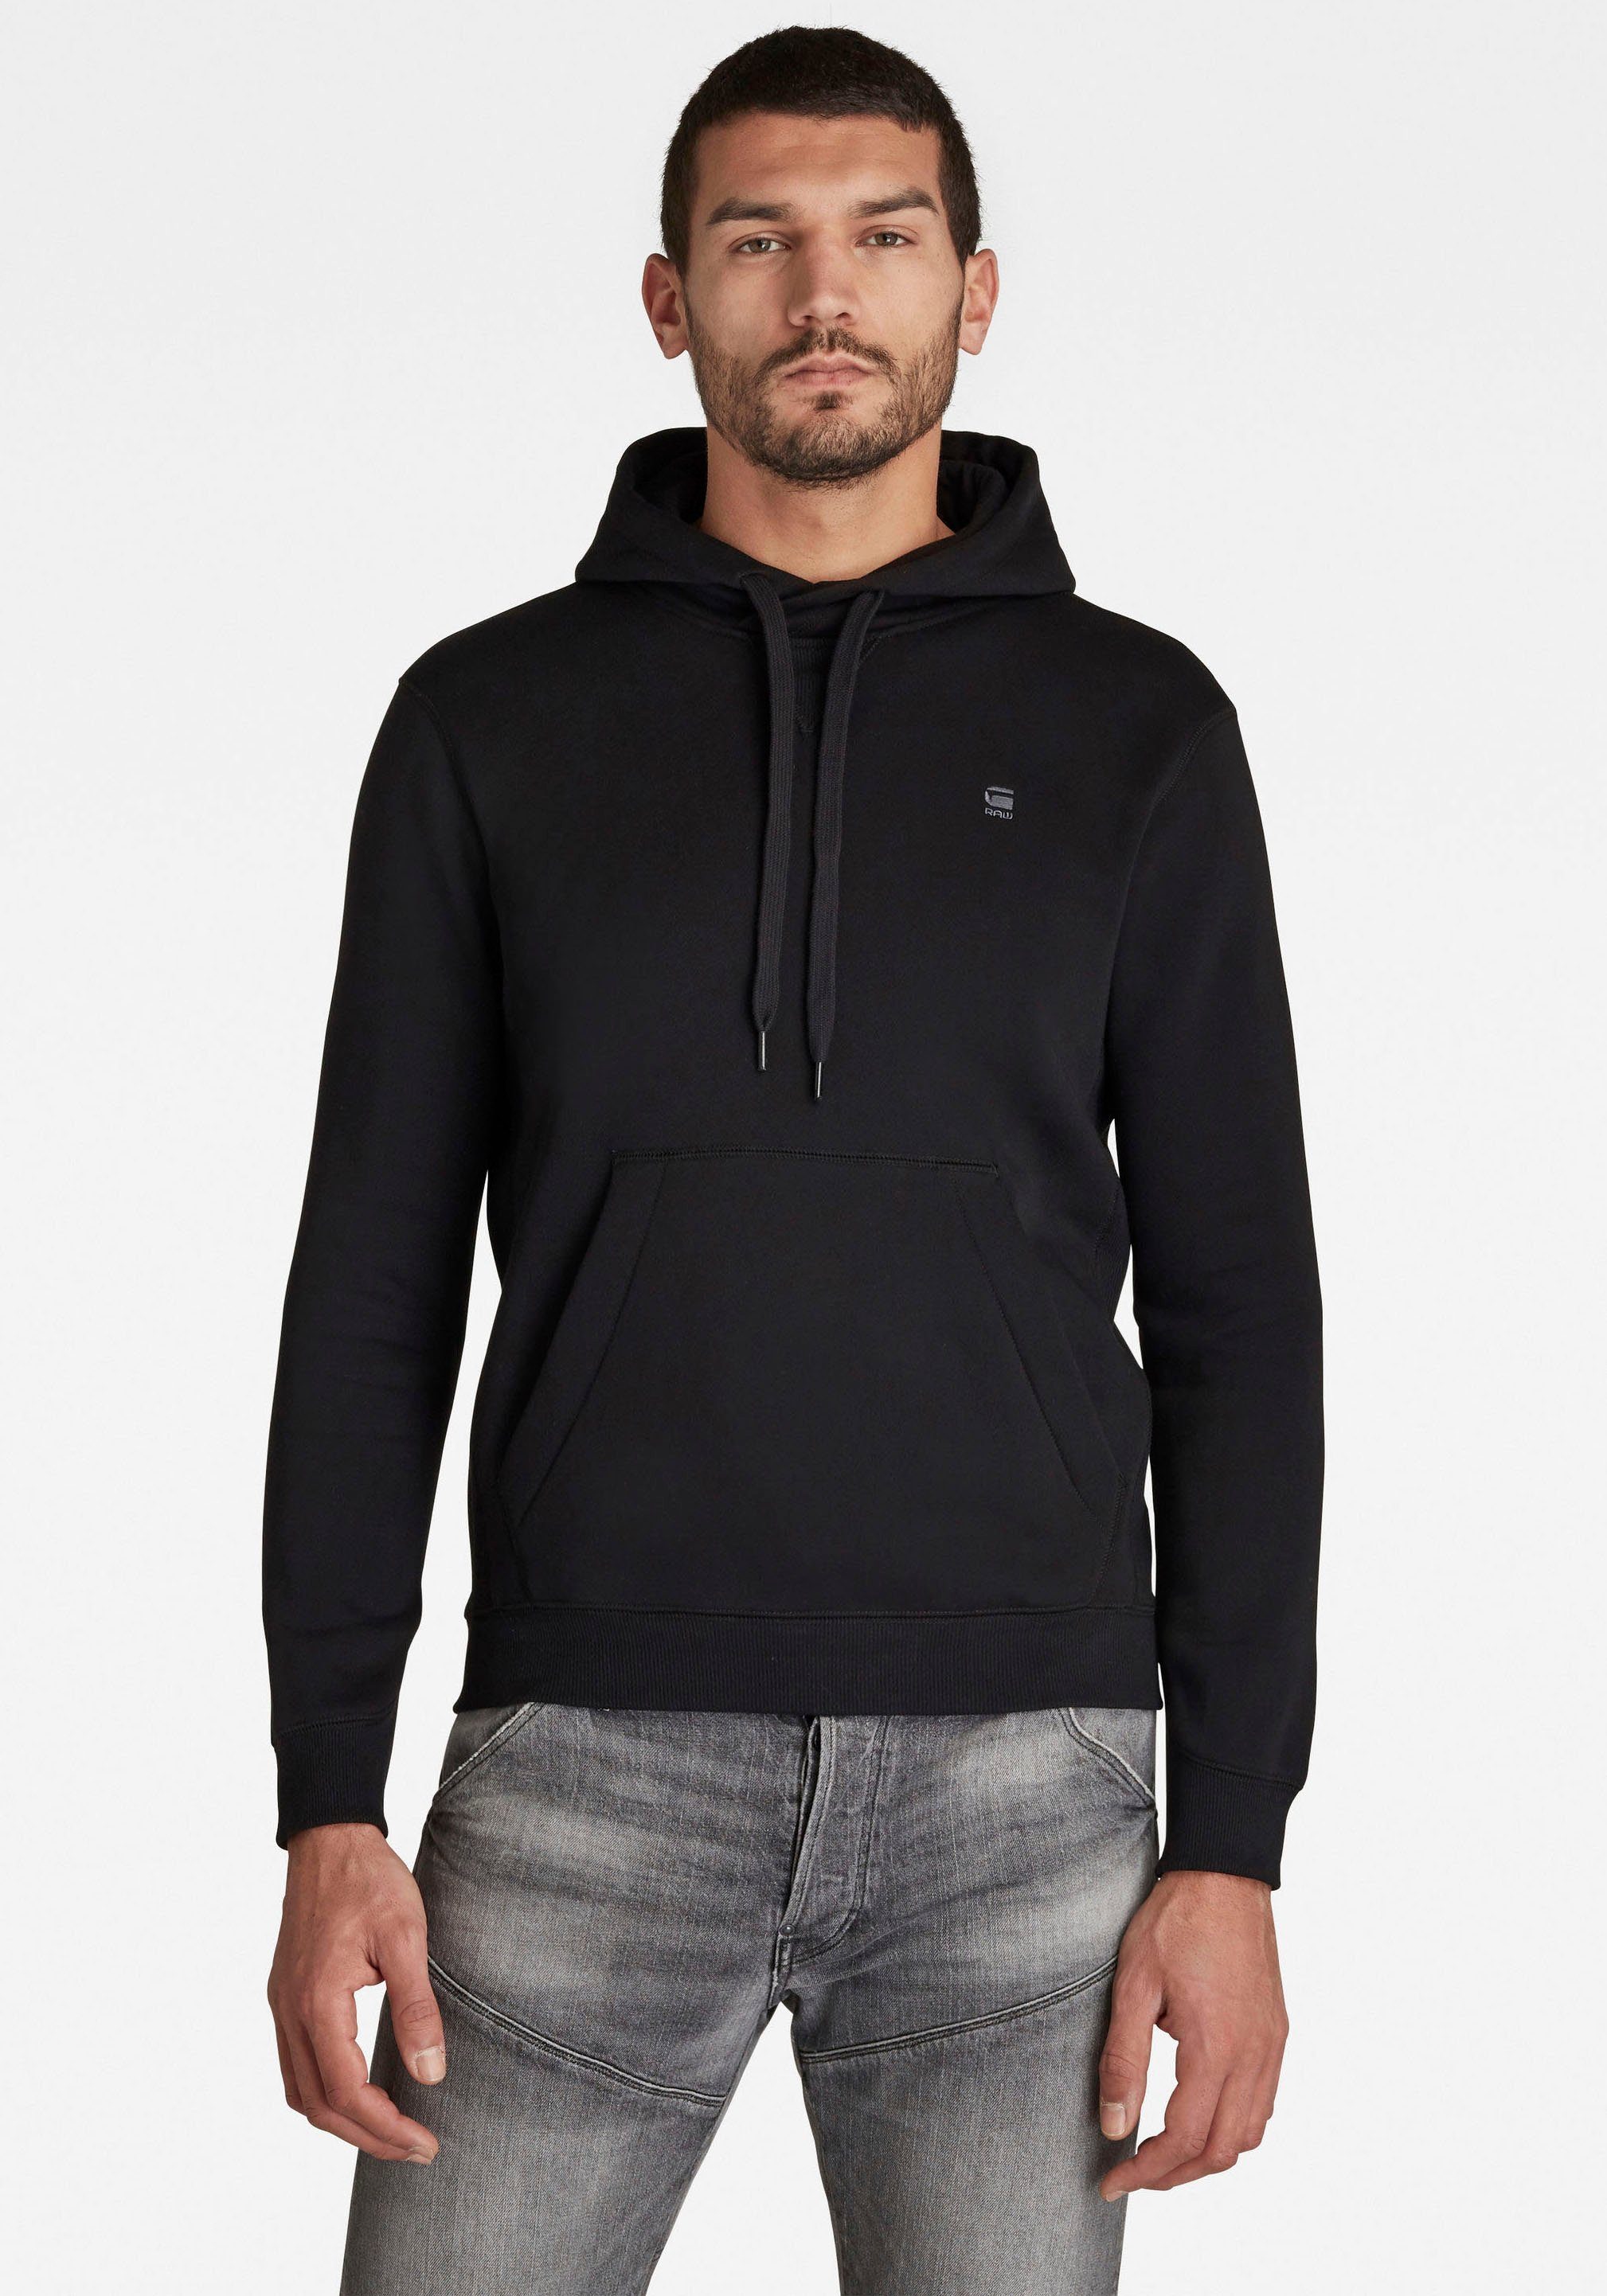 Premium G-Star RAW Hoody Kapuzensweatshirt schwarz